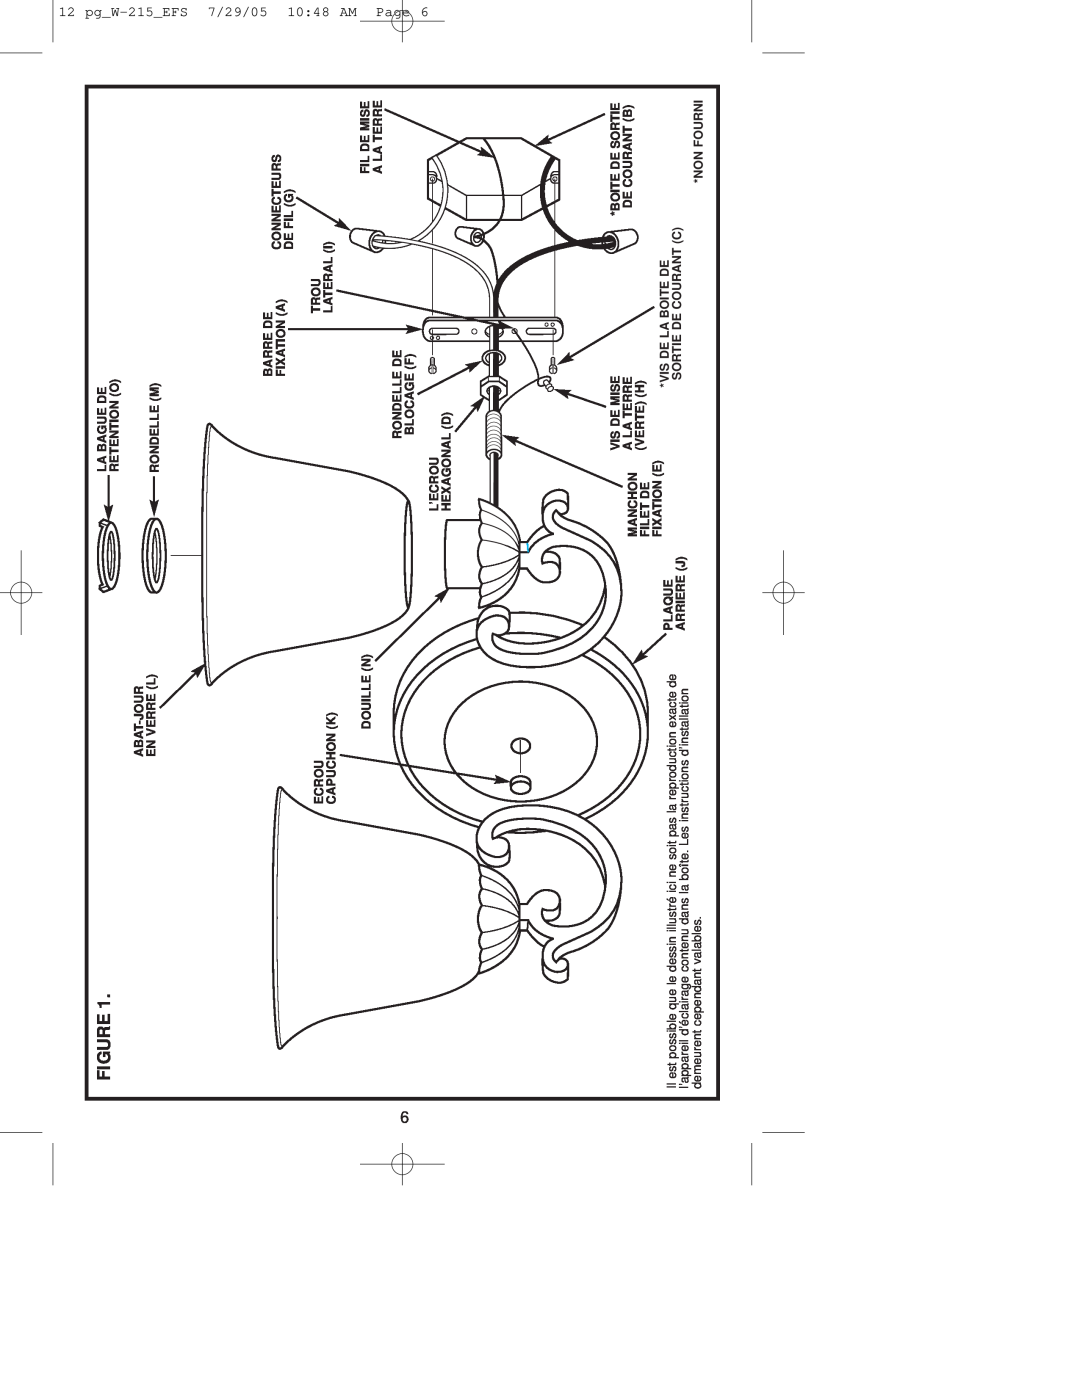 Westinghouse owner manual pg W-215 EFS7/29/05 10 48 AM Page, Abat-Jour En Verre L Ecrou Capuchon K Douille N 